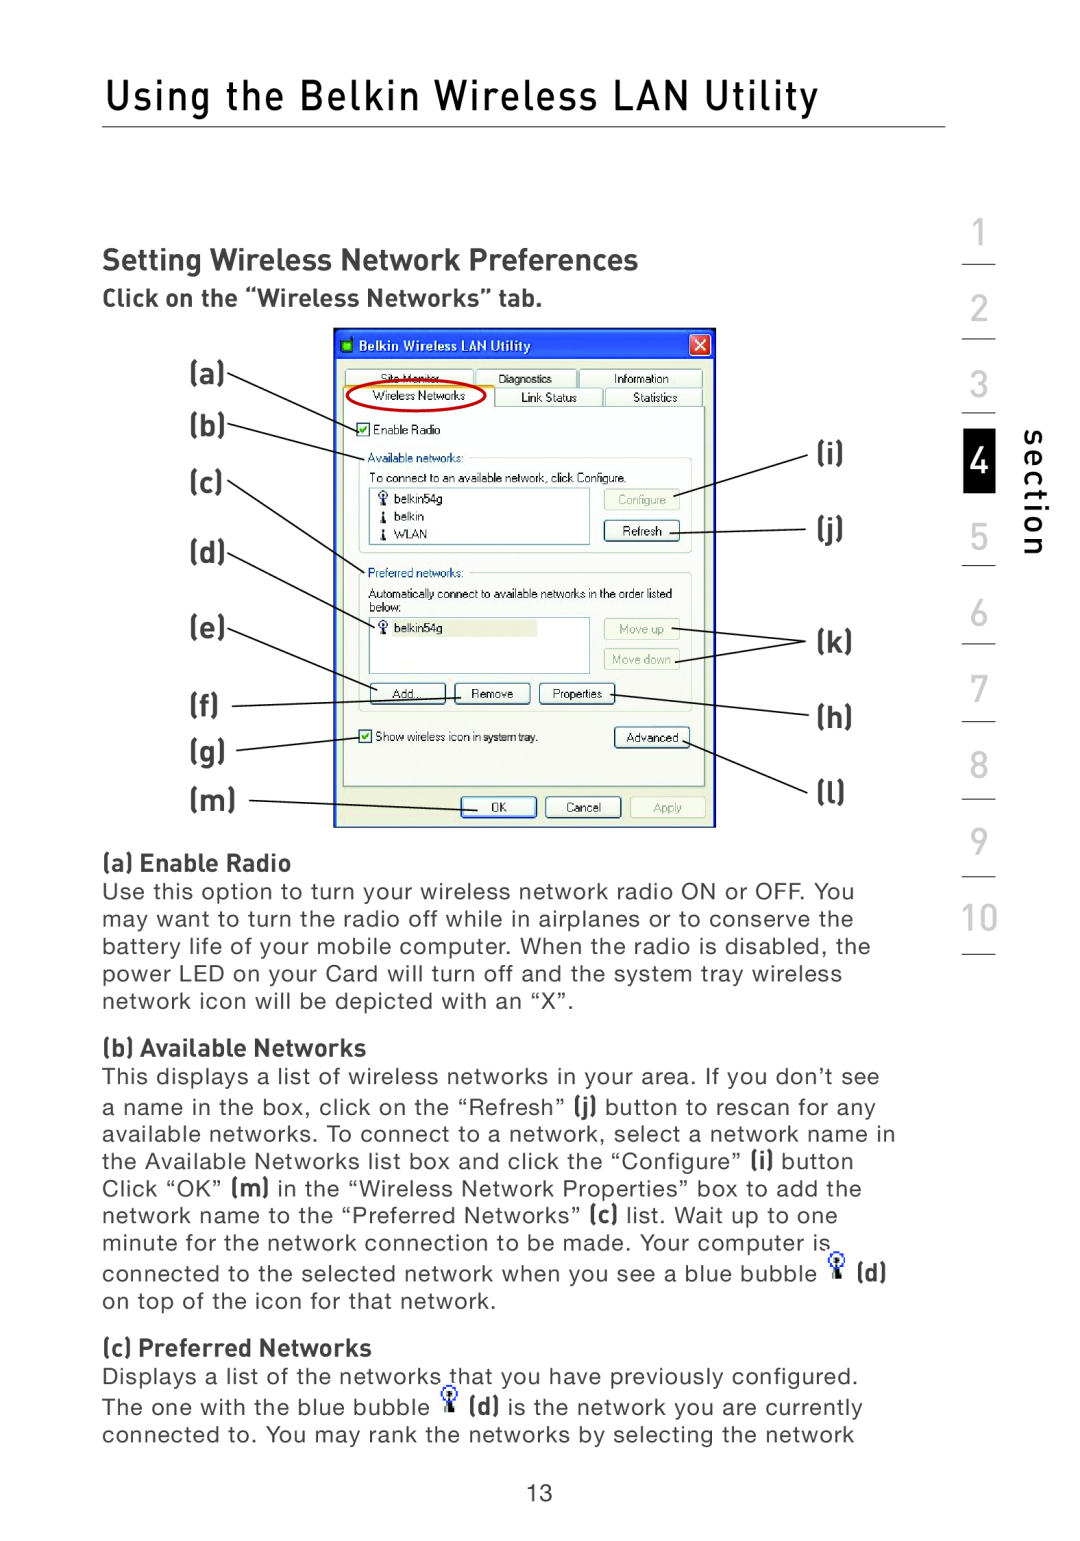 Belkin F5D7011 Setting Wireless Network Preferences, a b c d e f g m, i j k h l, Click on the “Wireless Networks” tab 